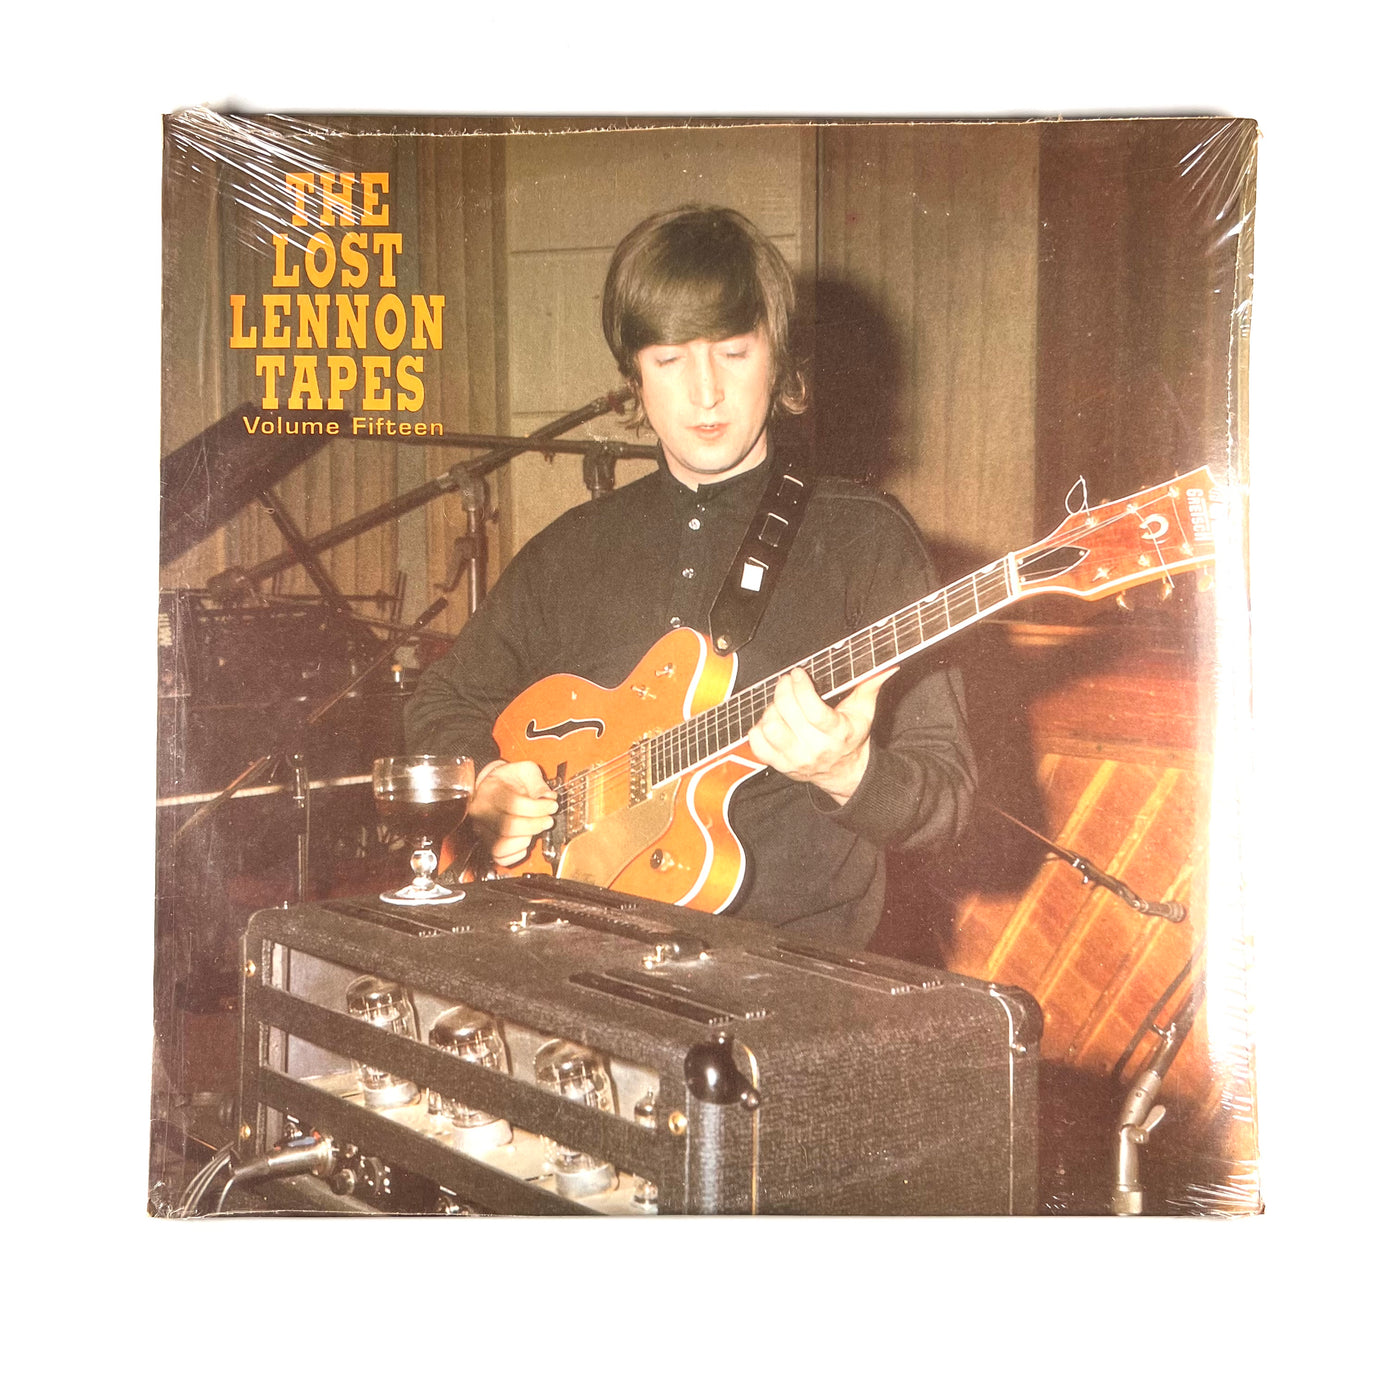 John Lennon - The Lost Lennon Tapes Volume Fifteen